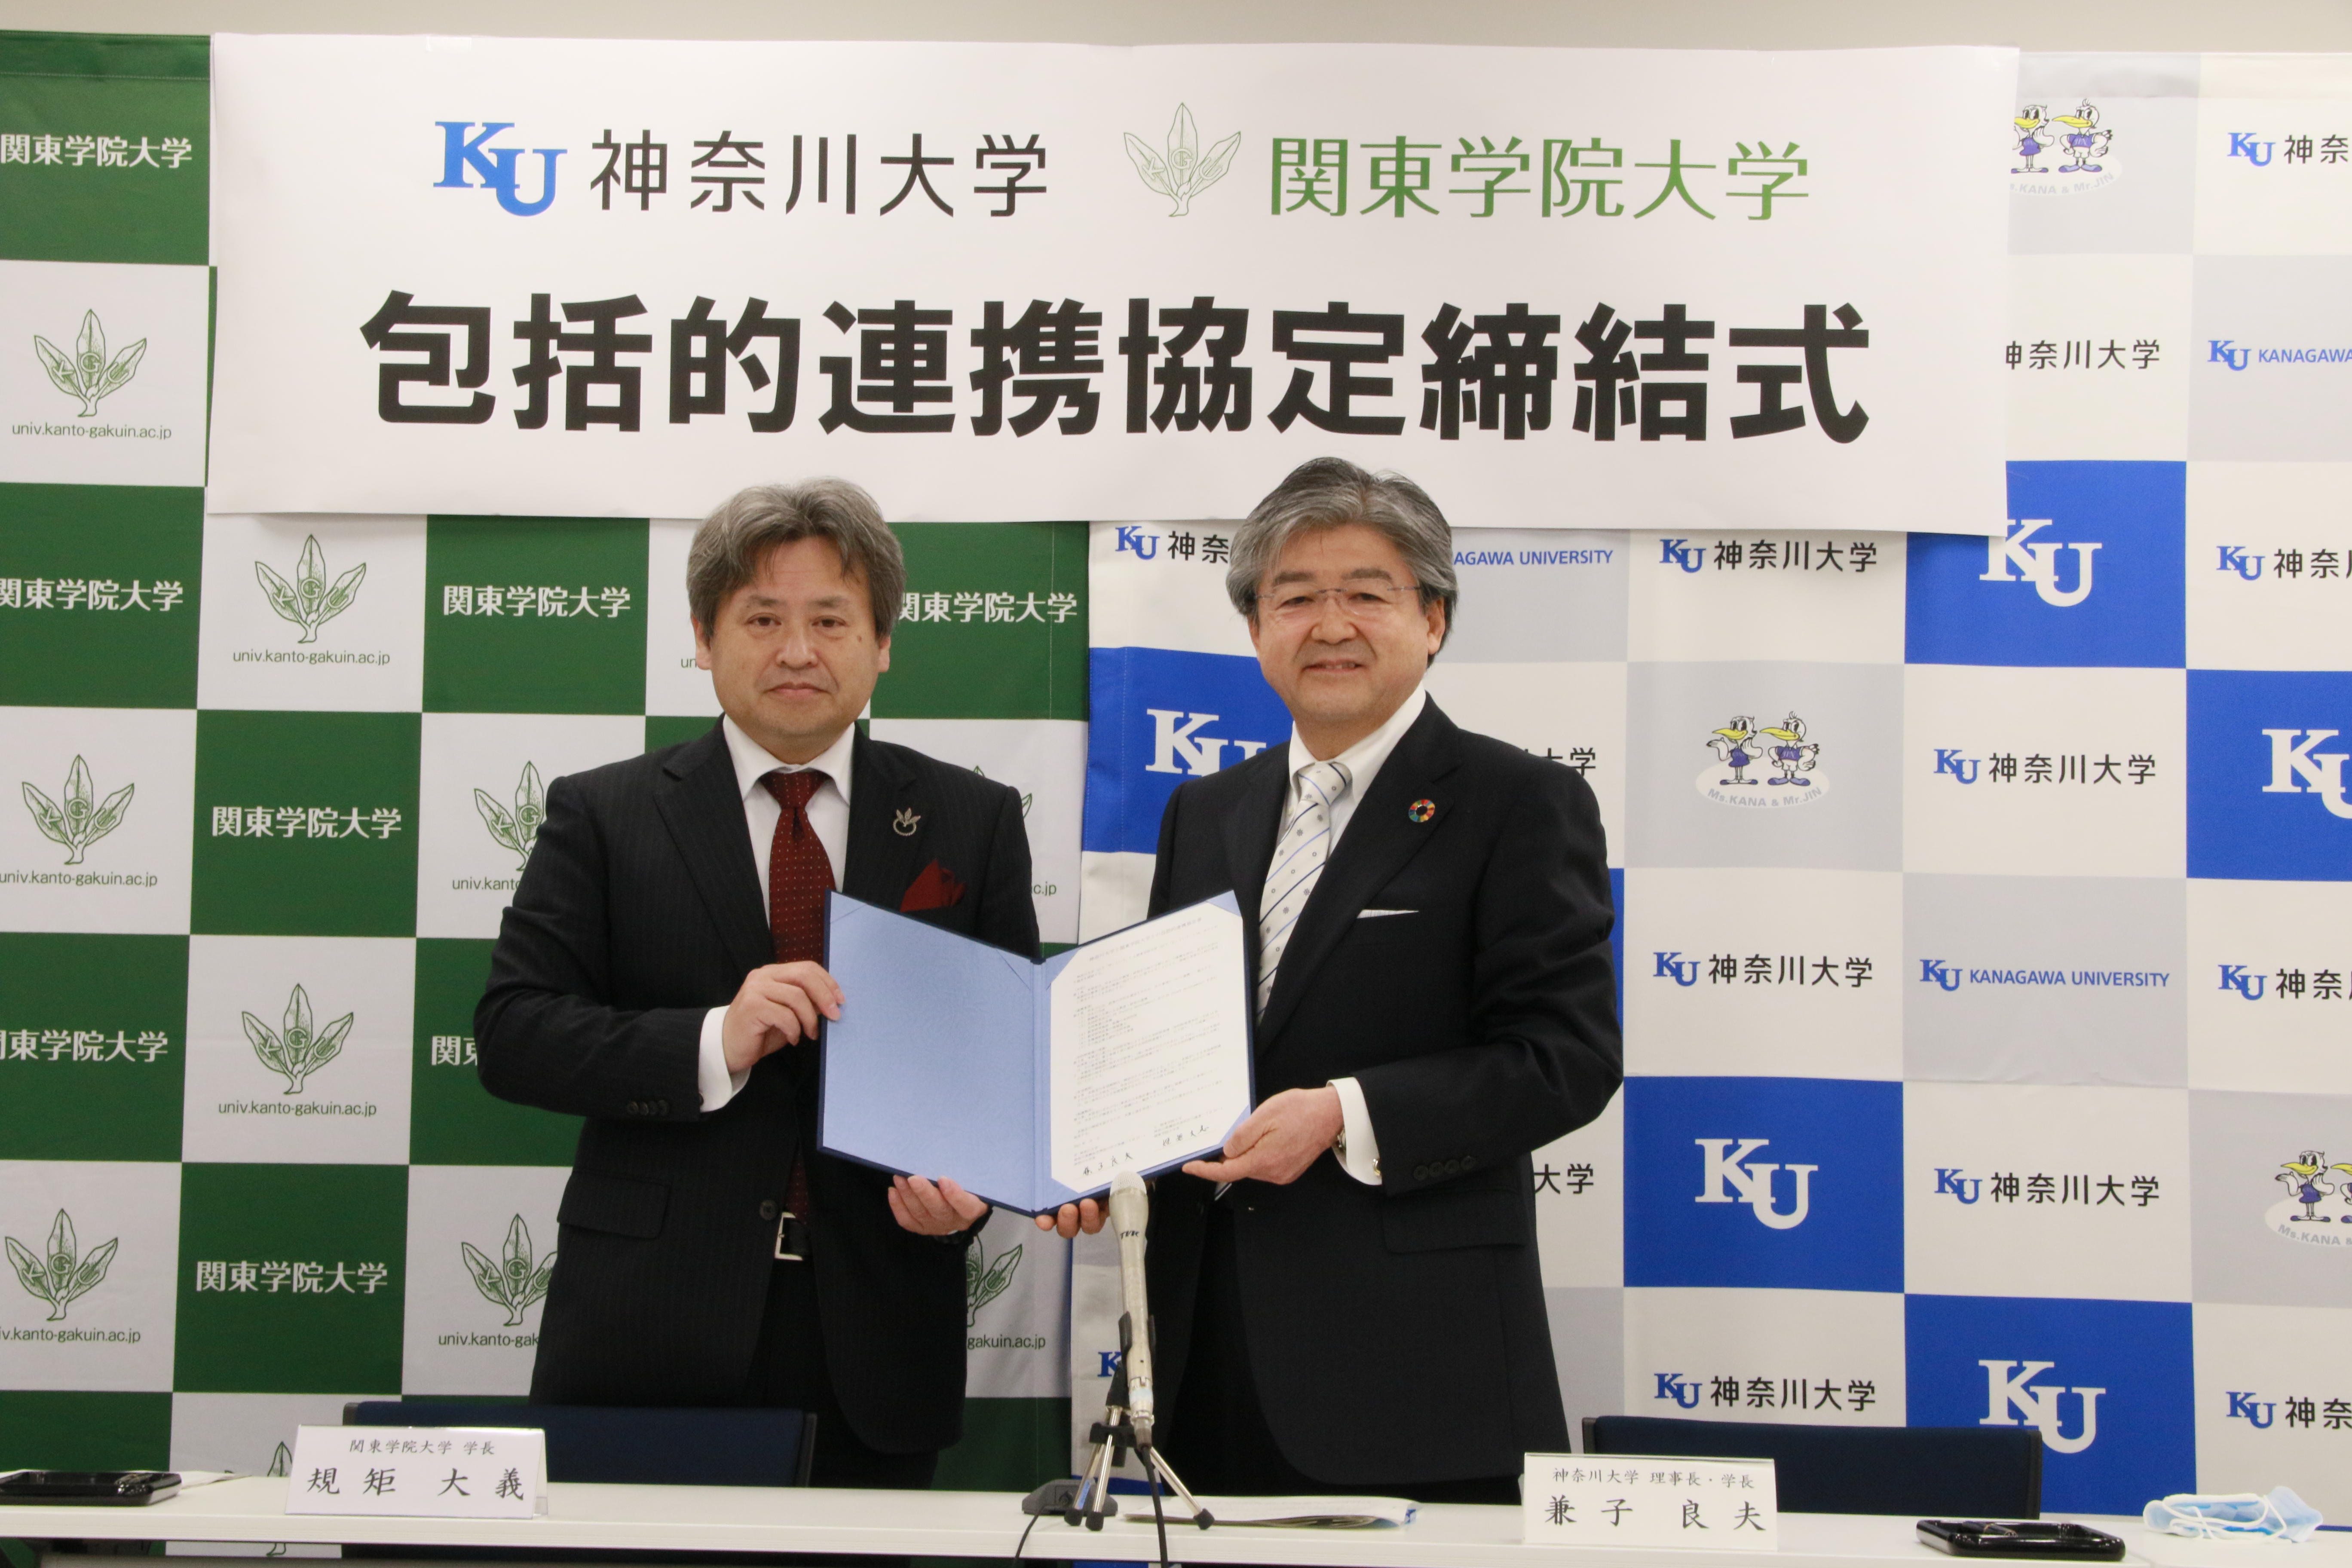 神奈川大学と関東学院大学が包括的連携協定を締結しました